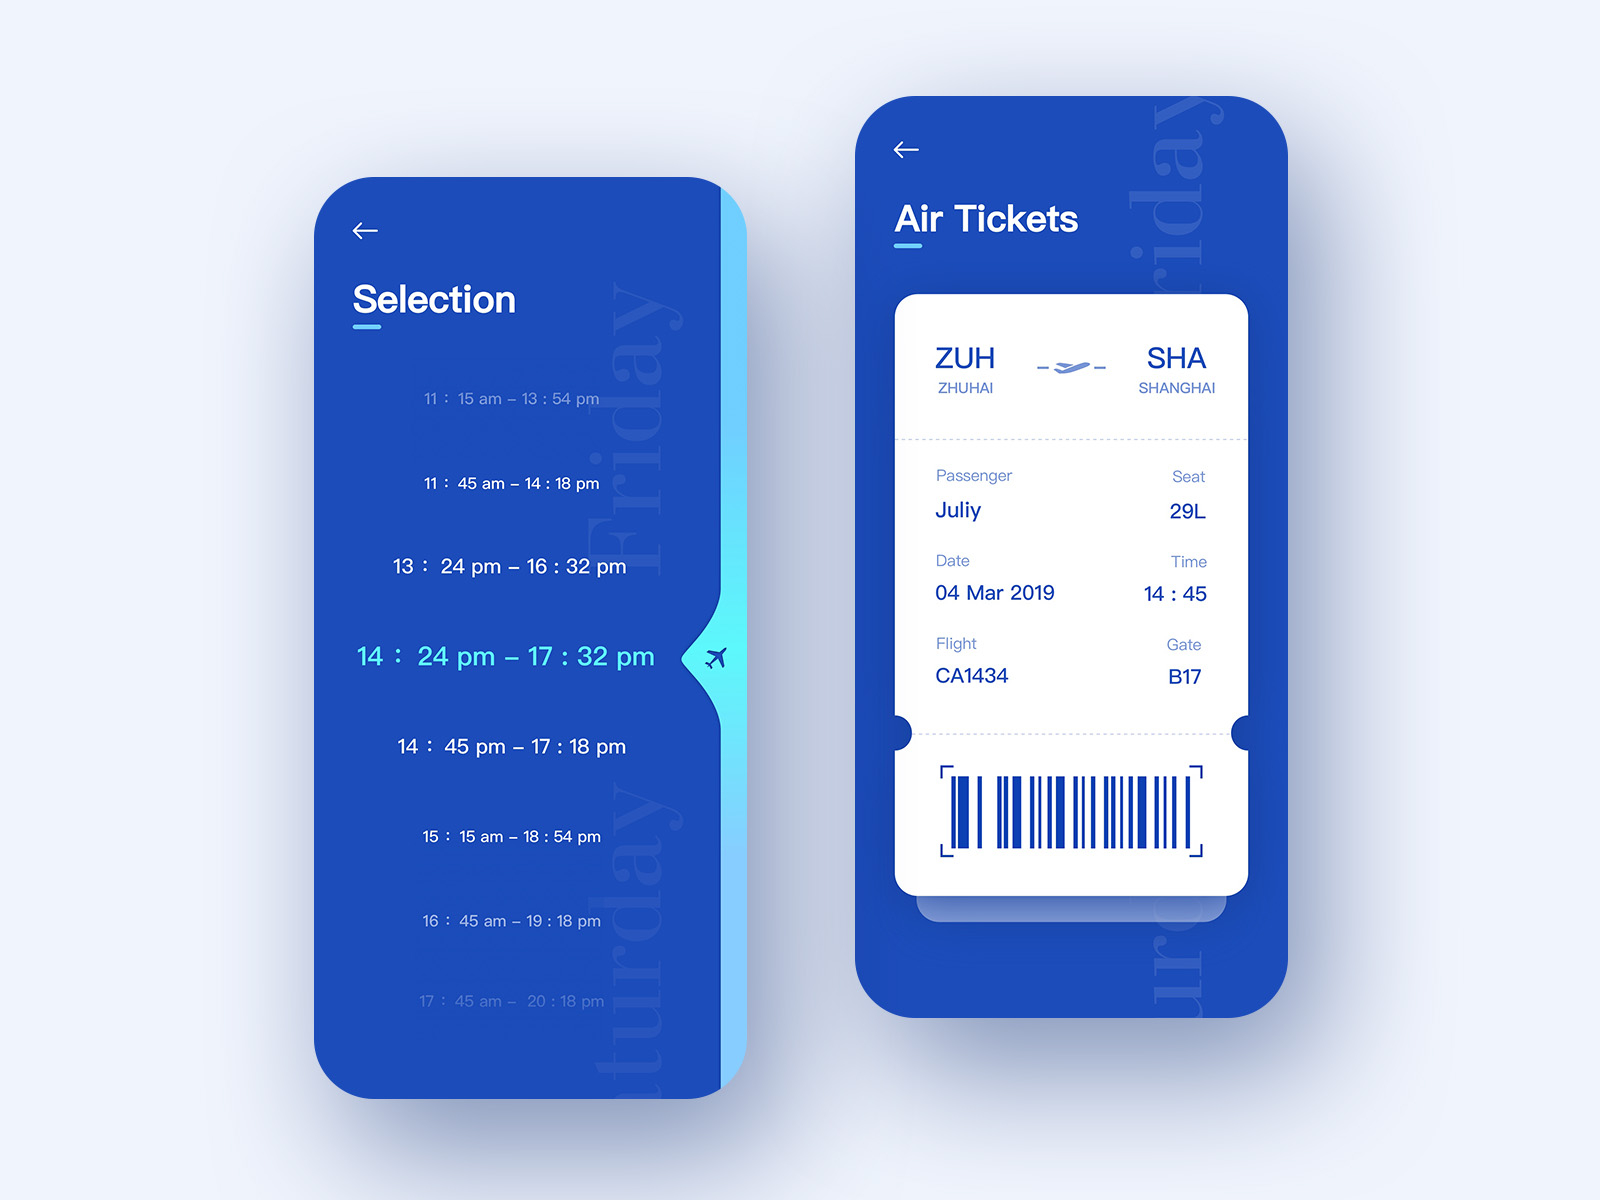 Tickets app